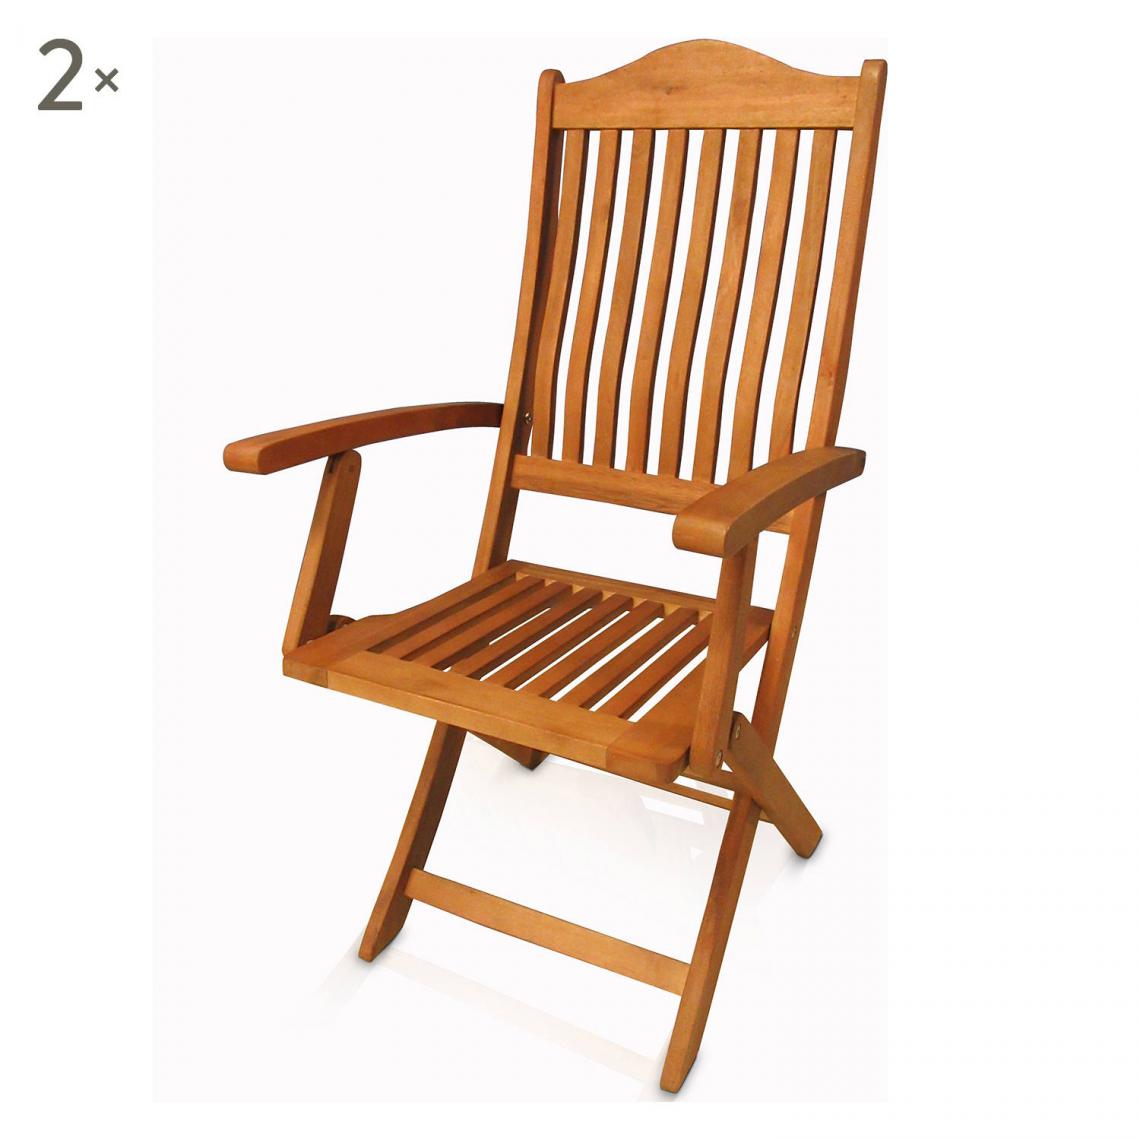 Alter - Lot de 2 chaises d'extérieur, style classique, Lot de 2 chaises d'extérieur en bois d'eucalyptus, cm 54x51.3h103, couleur Marron - Chaises